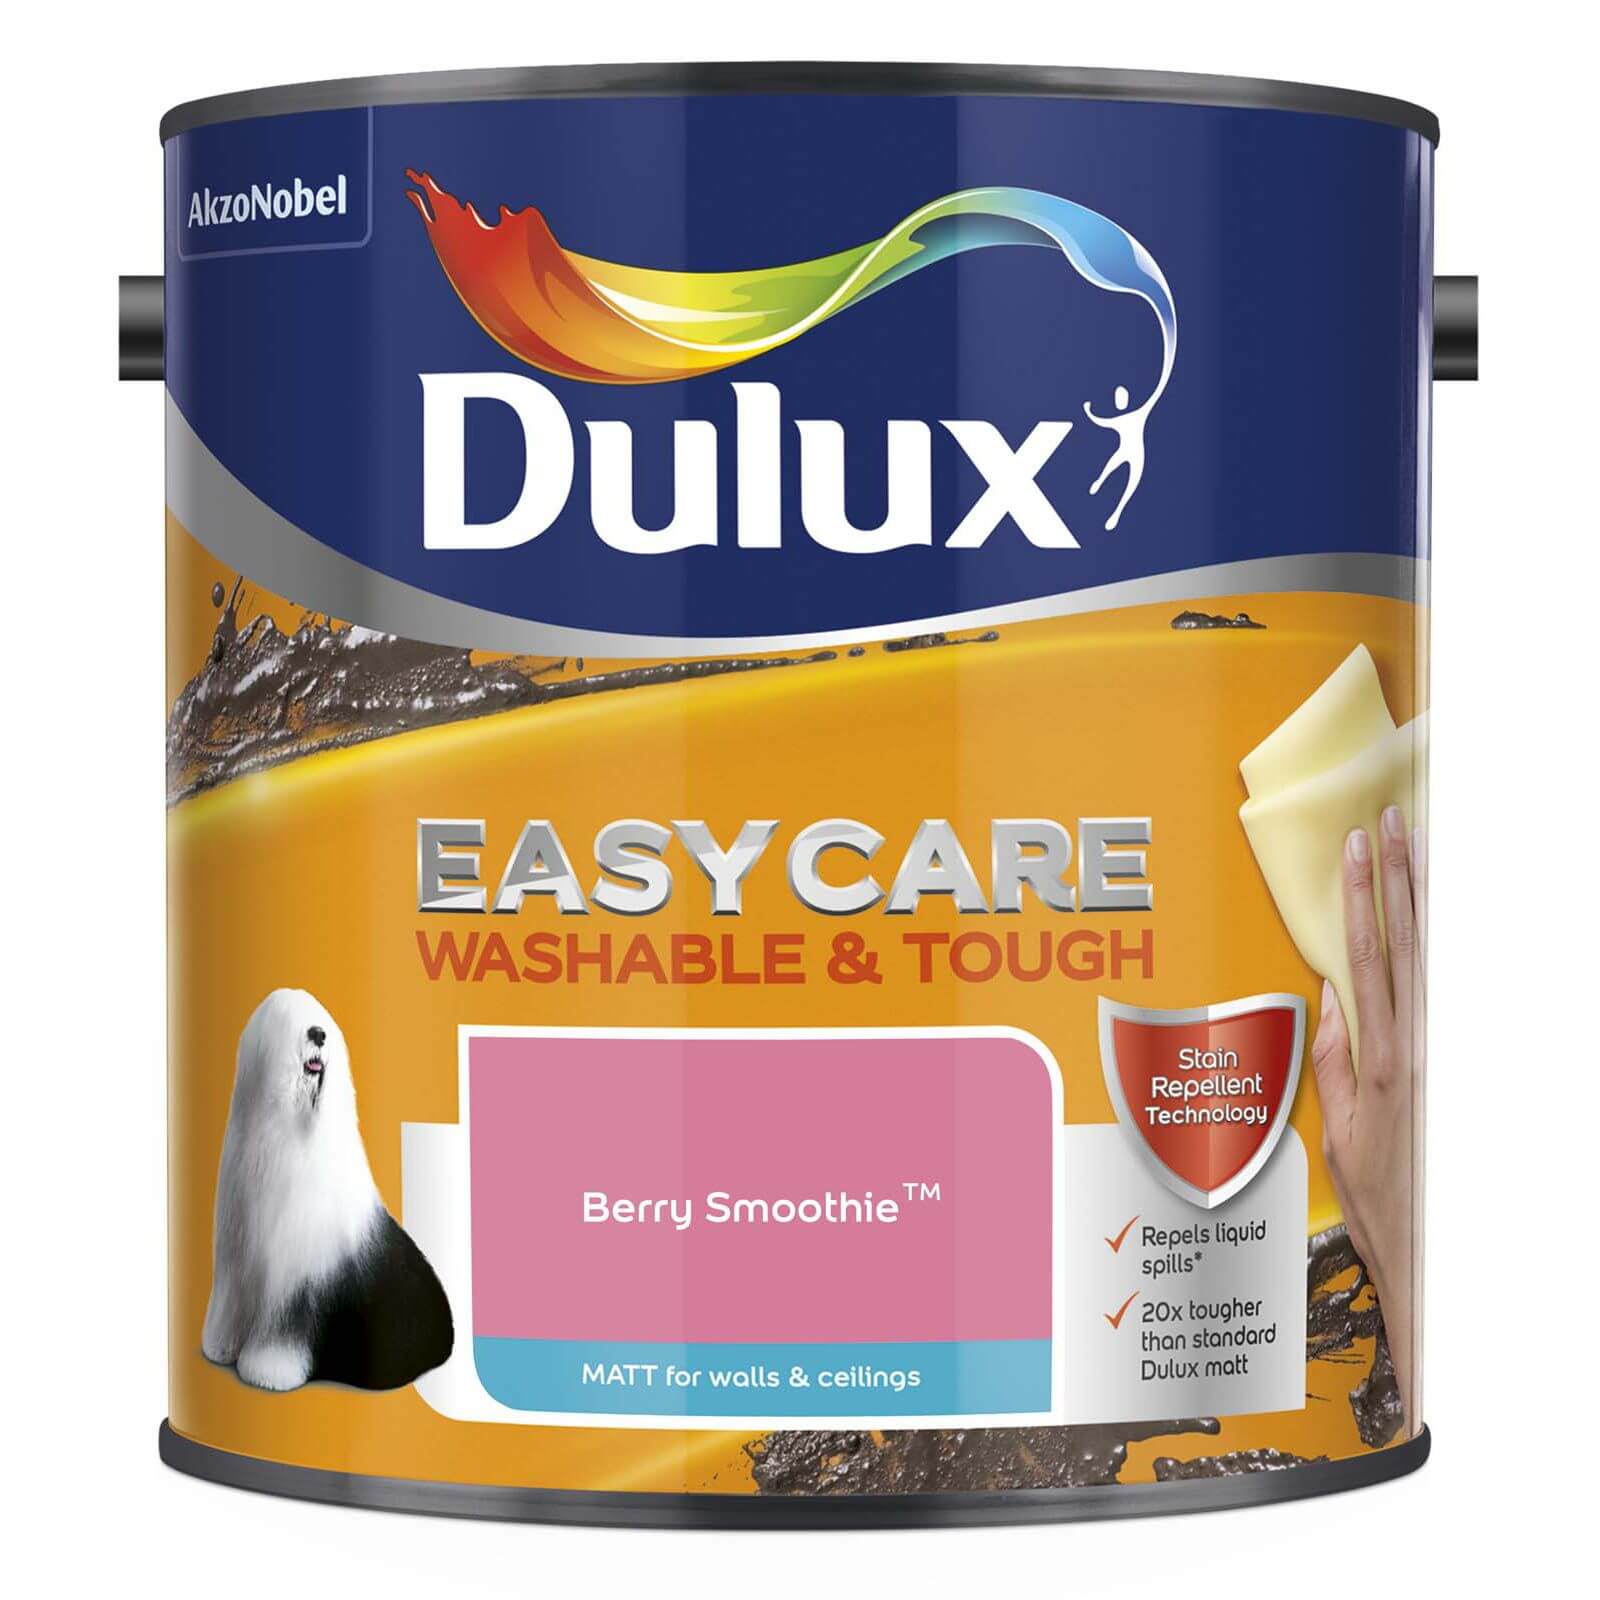 Dulux Easycare Washable & Tough Berry Smoothie Matt Paint - 2.5L